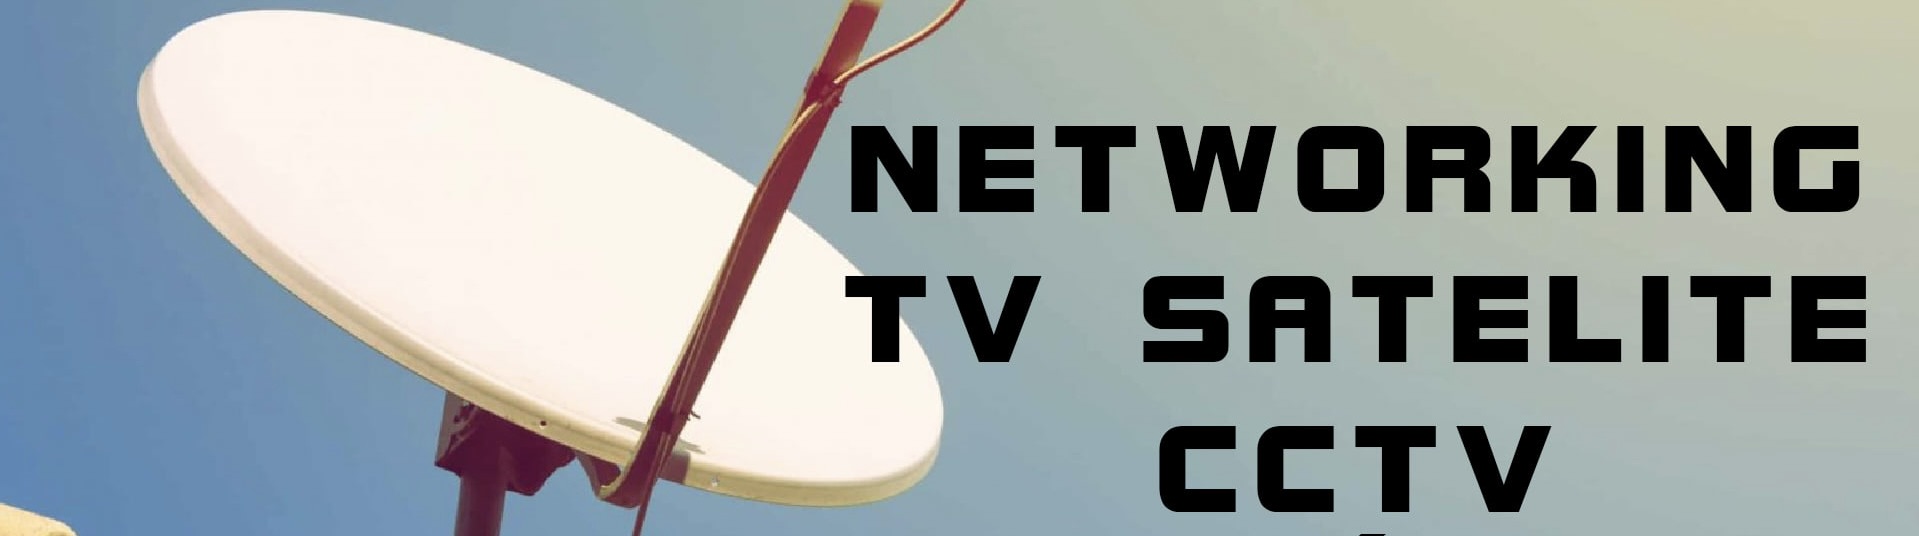 Costa Blanca Satelliet voor TV & internet verbindingen